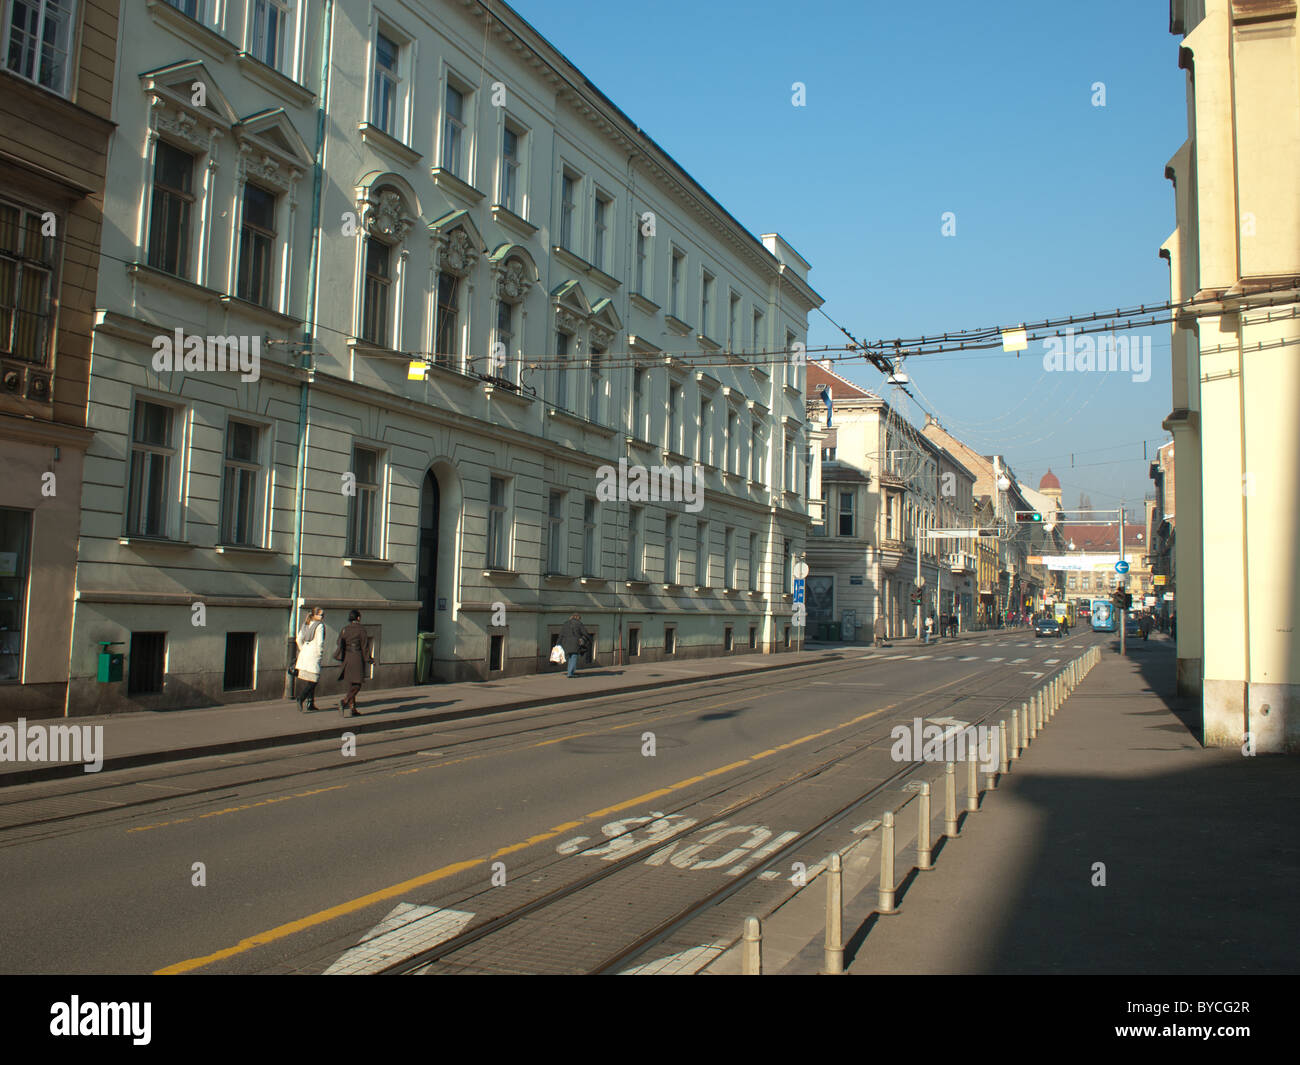 Zagreb Croatia city streets Stock Photo